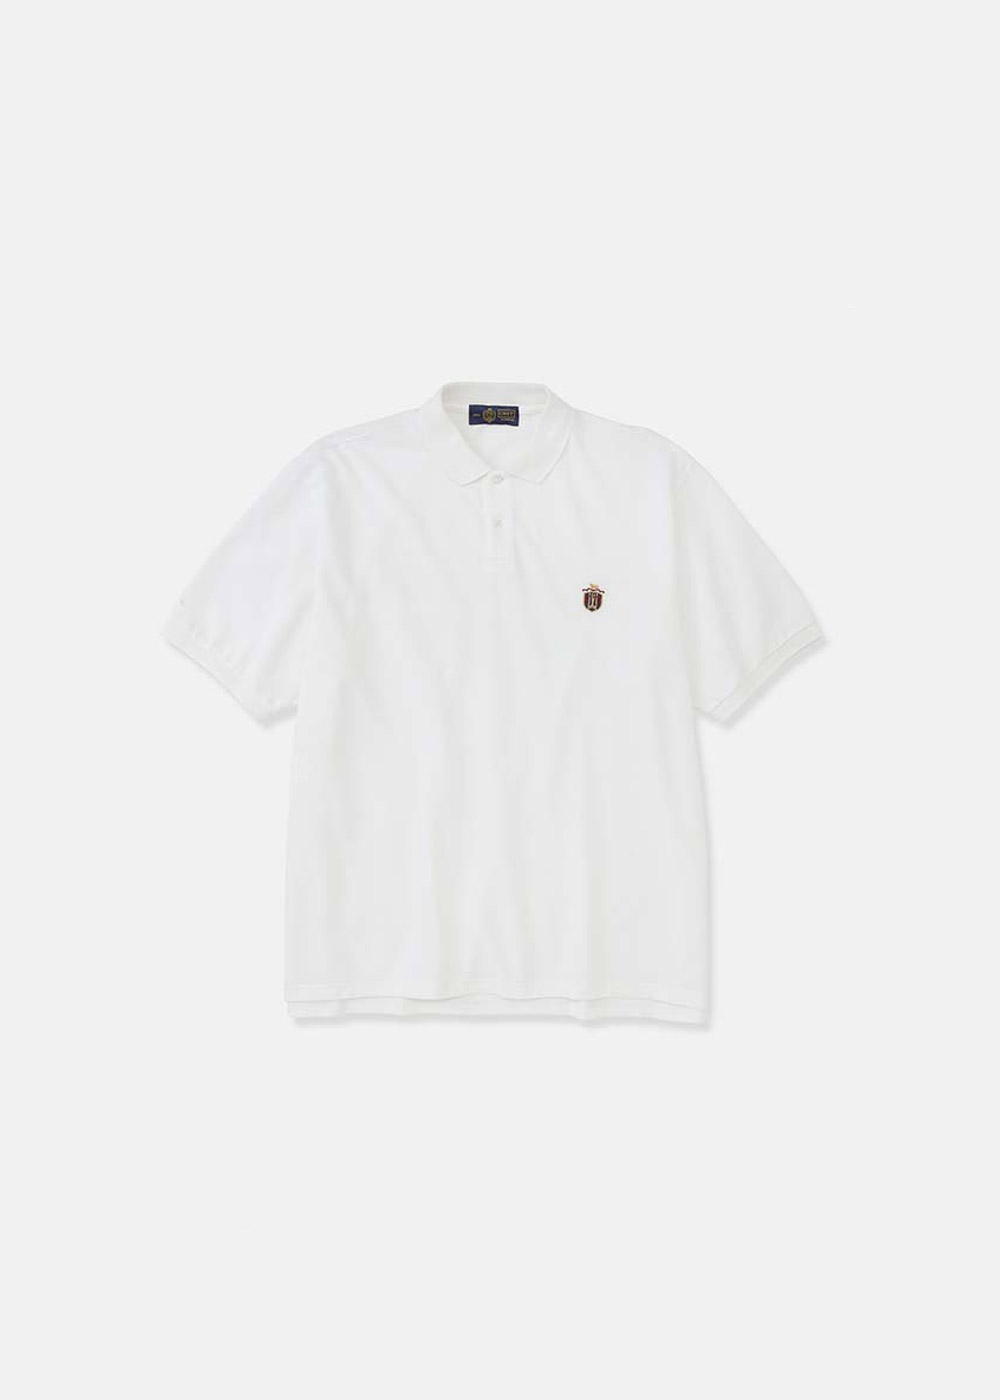 CRST Polo Shirts (White)